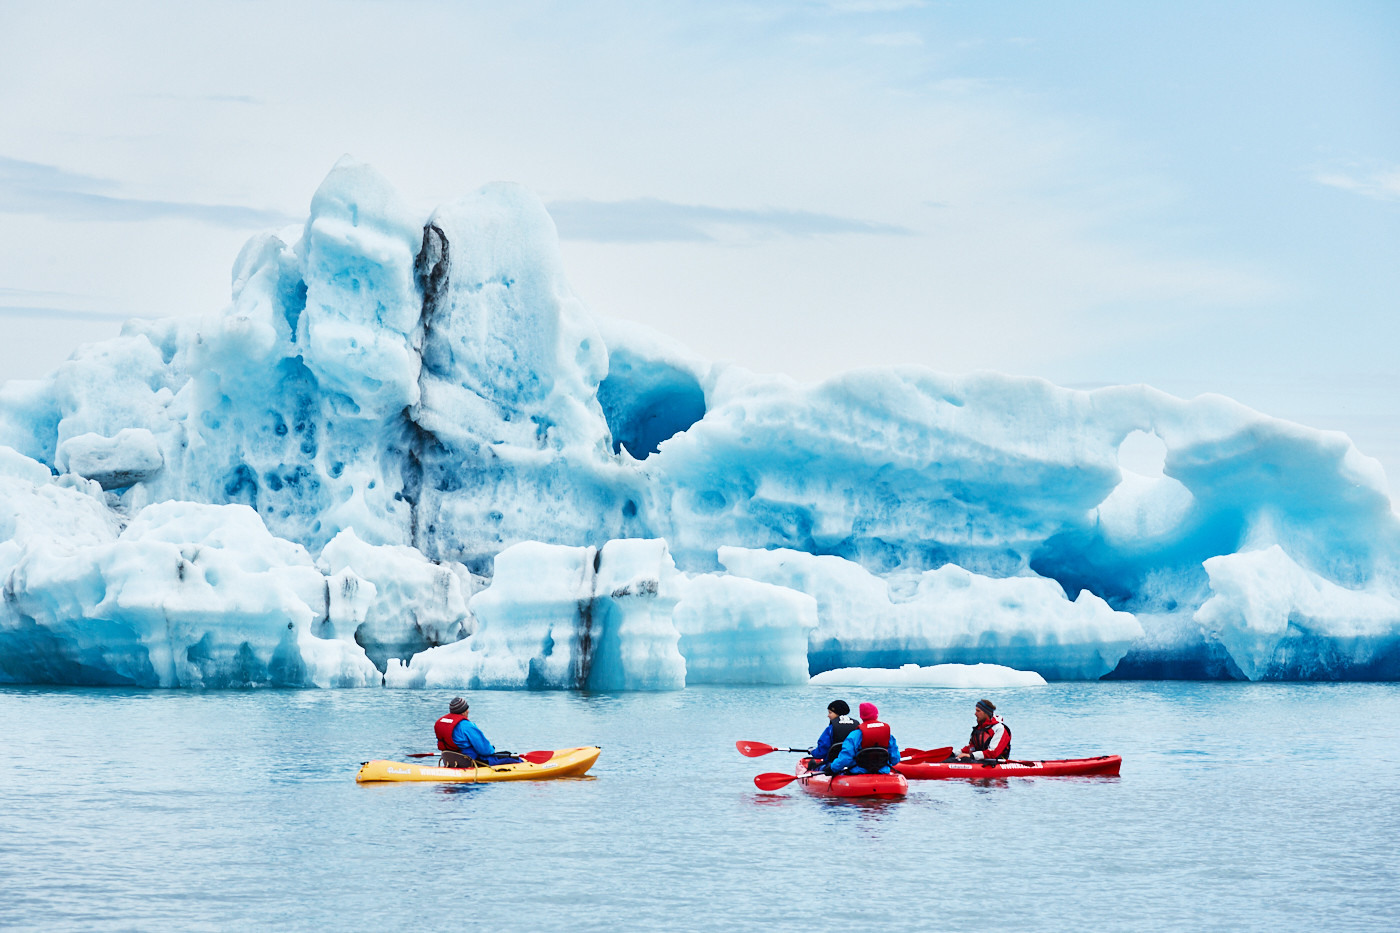 Bootstour auf dem Jökulsárlón Gletschersee, Eissee, Ice lake, Ice lagoon, Boat tour on the glacier lake, Iceland, famous, Island, Miles and Shores, Reiseblog, travelblog, glacier, glacier lake, gletscher, kayaks, kajak, kajakfahren